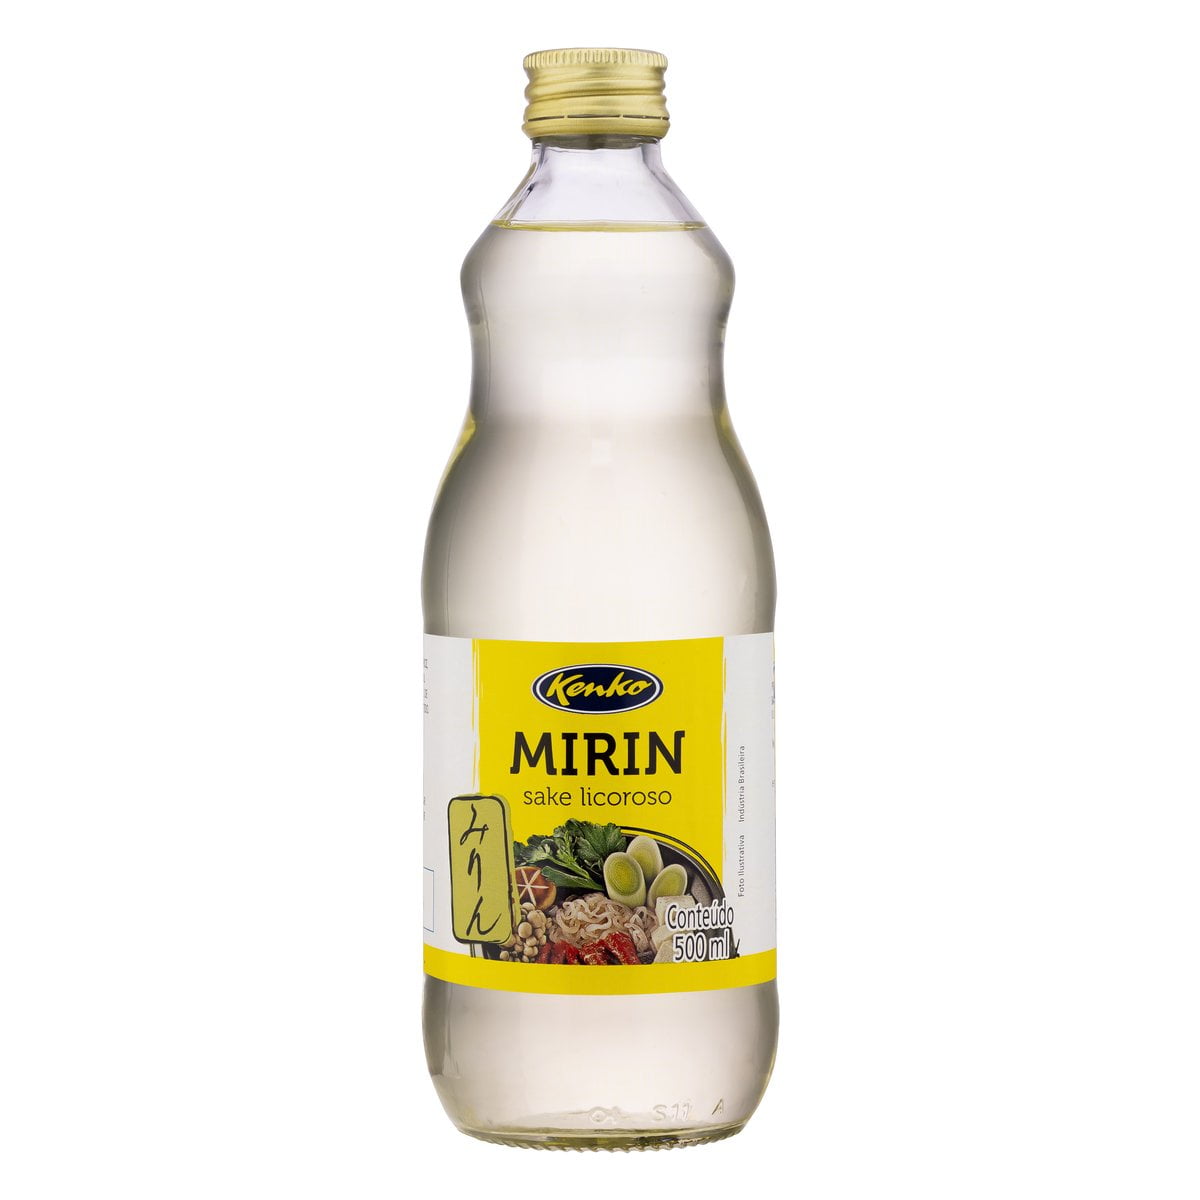 Sake Licoroso Mirin Kenko - 500 ml